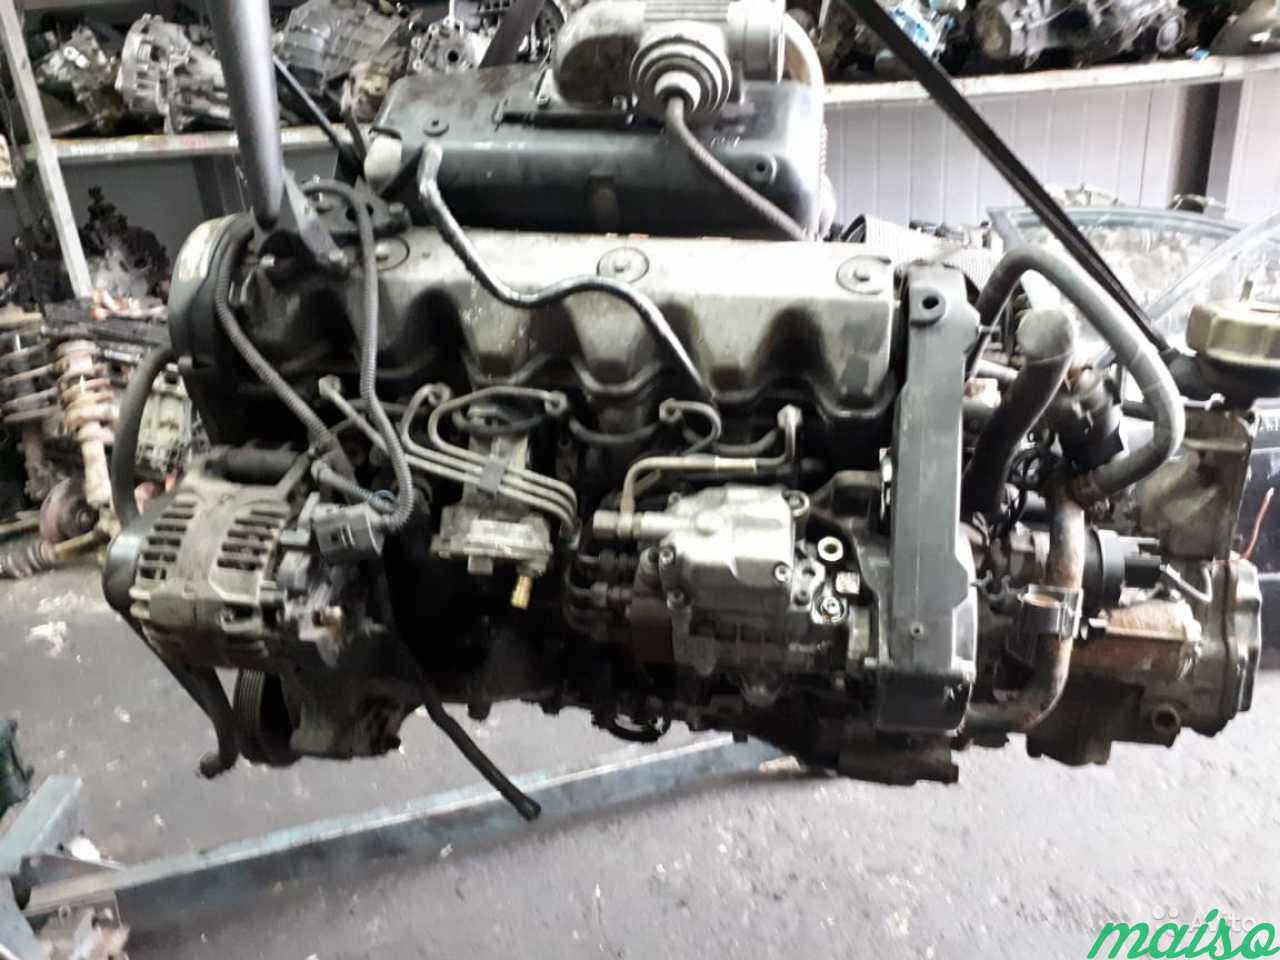 Мотор фольксваген т4. Двигатель AJT 2.5 TDI. ДВС Фольксваген Транспортер 2.5. Фольксваген т4 2.5 тди AJT. Двигатель Фольксваген т4 2.5 дизель.